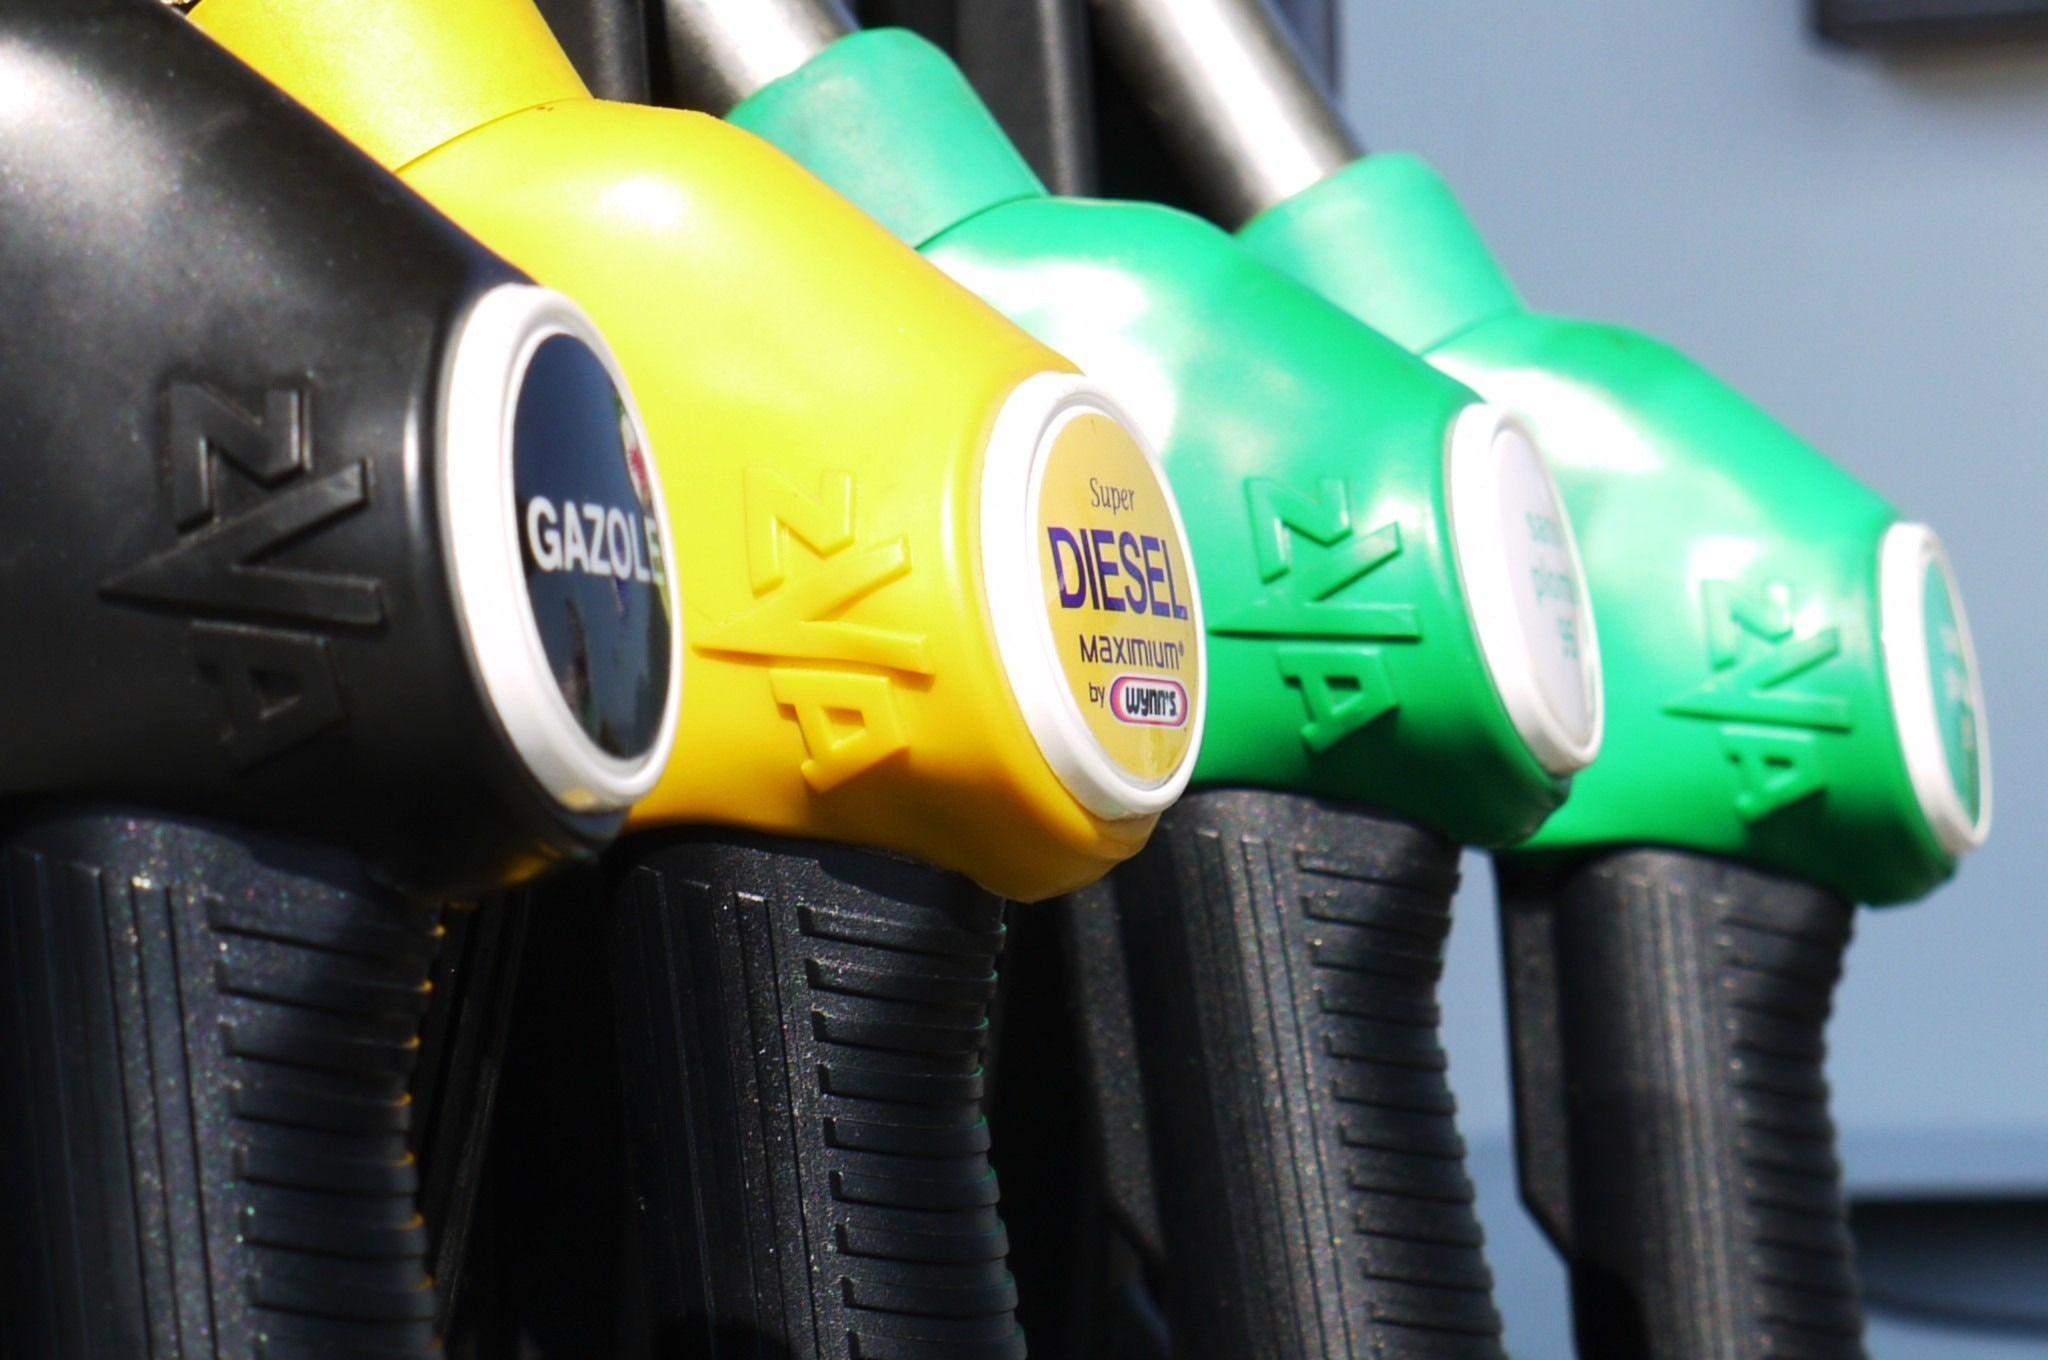 Gasoline, Diesel, Petrol, Gas, Fuel, Oil, transportation, car free